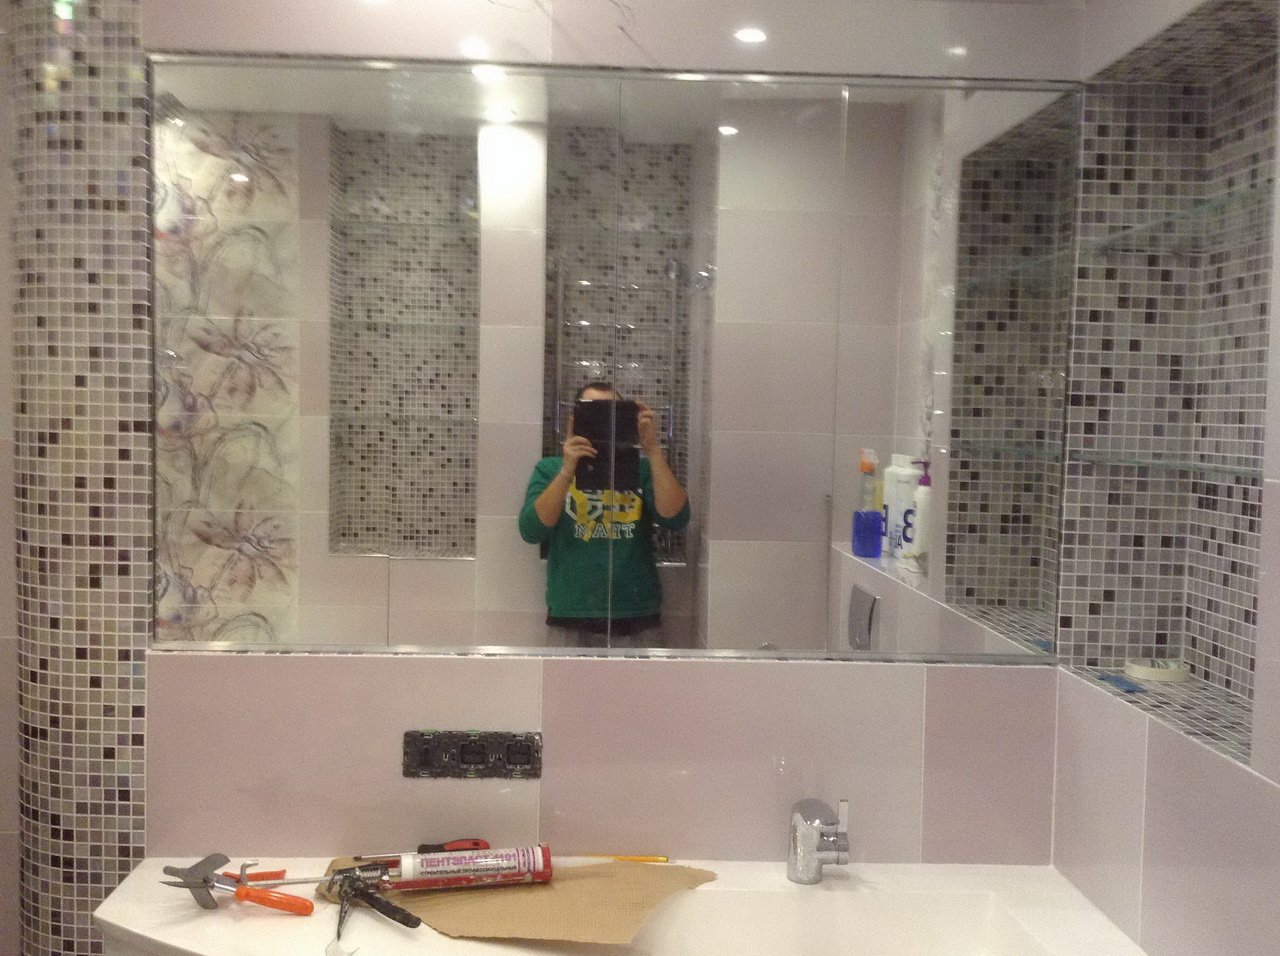 Зеркала в плитке ванной комнаты. Зеркало в ванной встроенное в плитку. Зеркальная мозаика в ванную комнату. Зеркальная плитка в ванной. Зеркало вместо плитки в ванной.